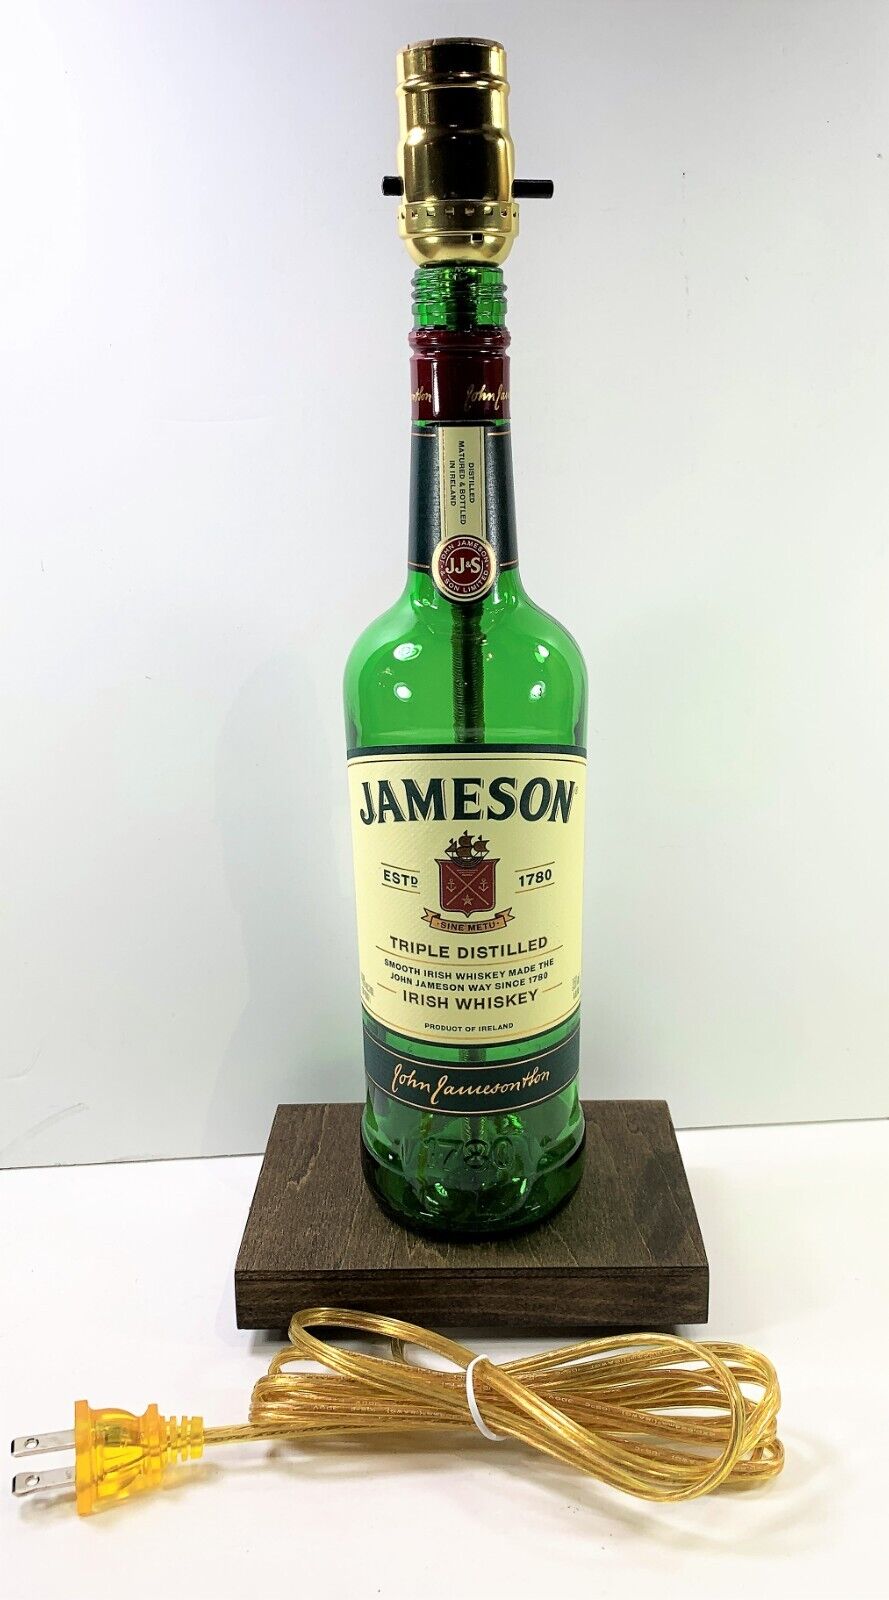 JAMESON IRISH WHISKEY Liquor Bottle TABLE LAMP Light Wood Base Bar Lounge Decor